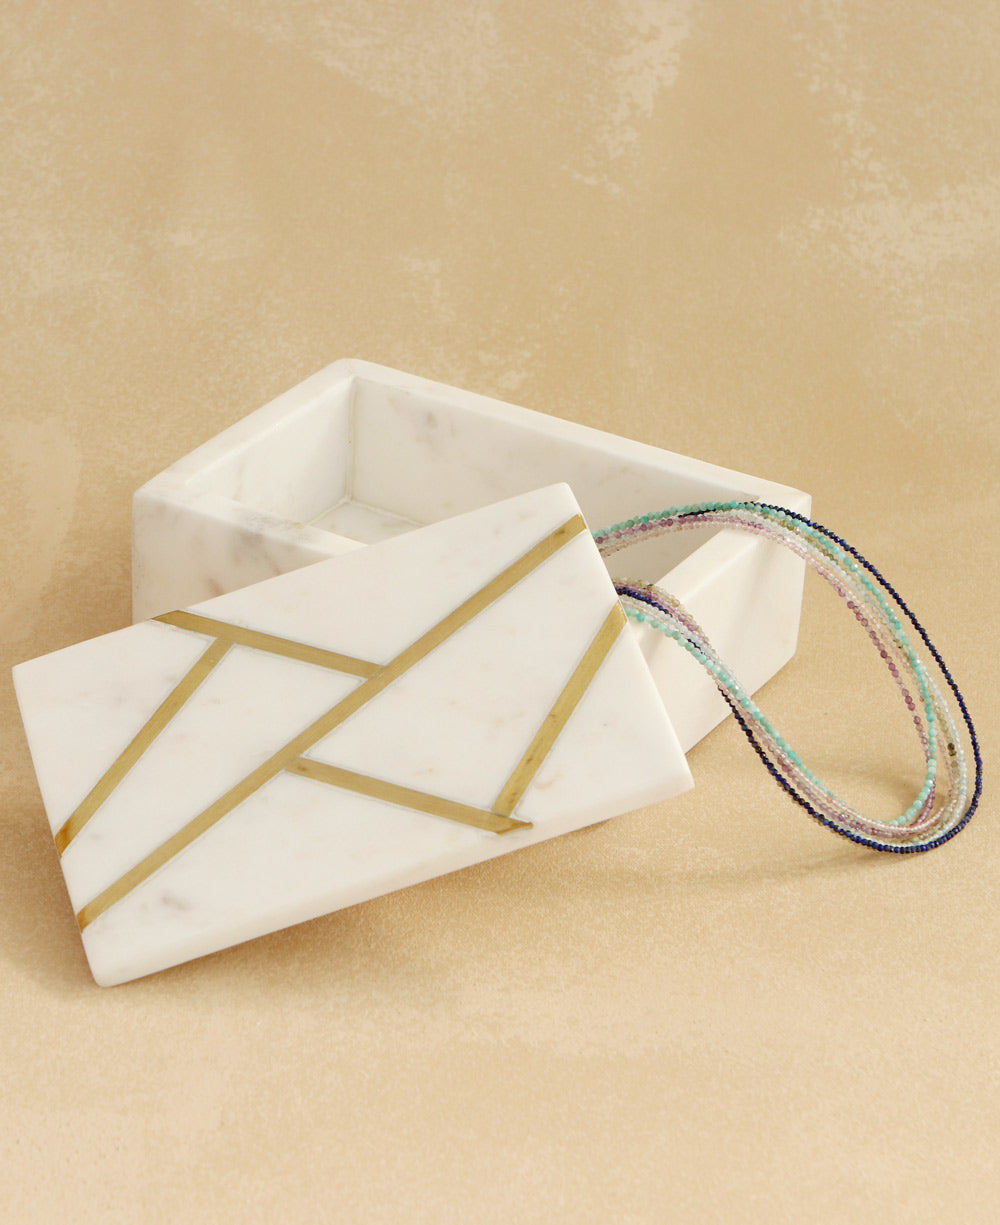 Geometric Brass Jewelry Box